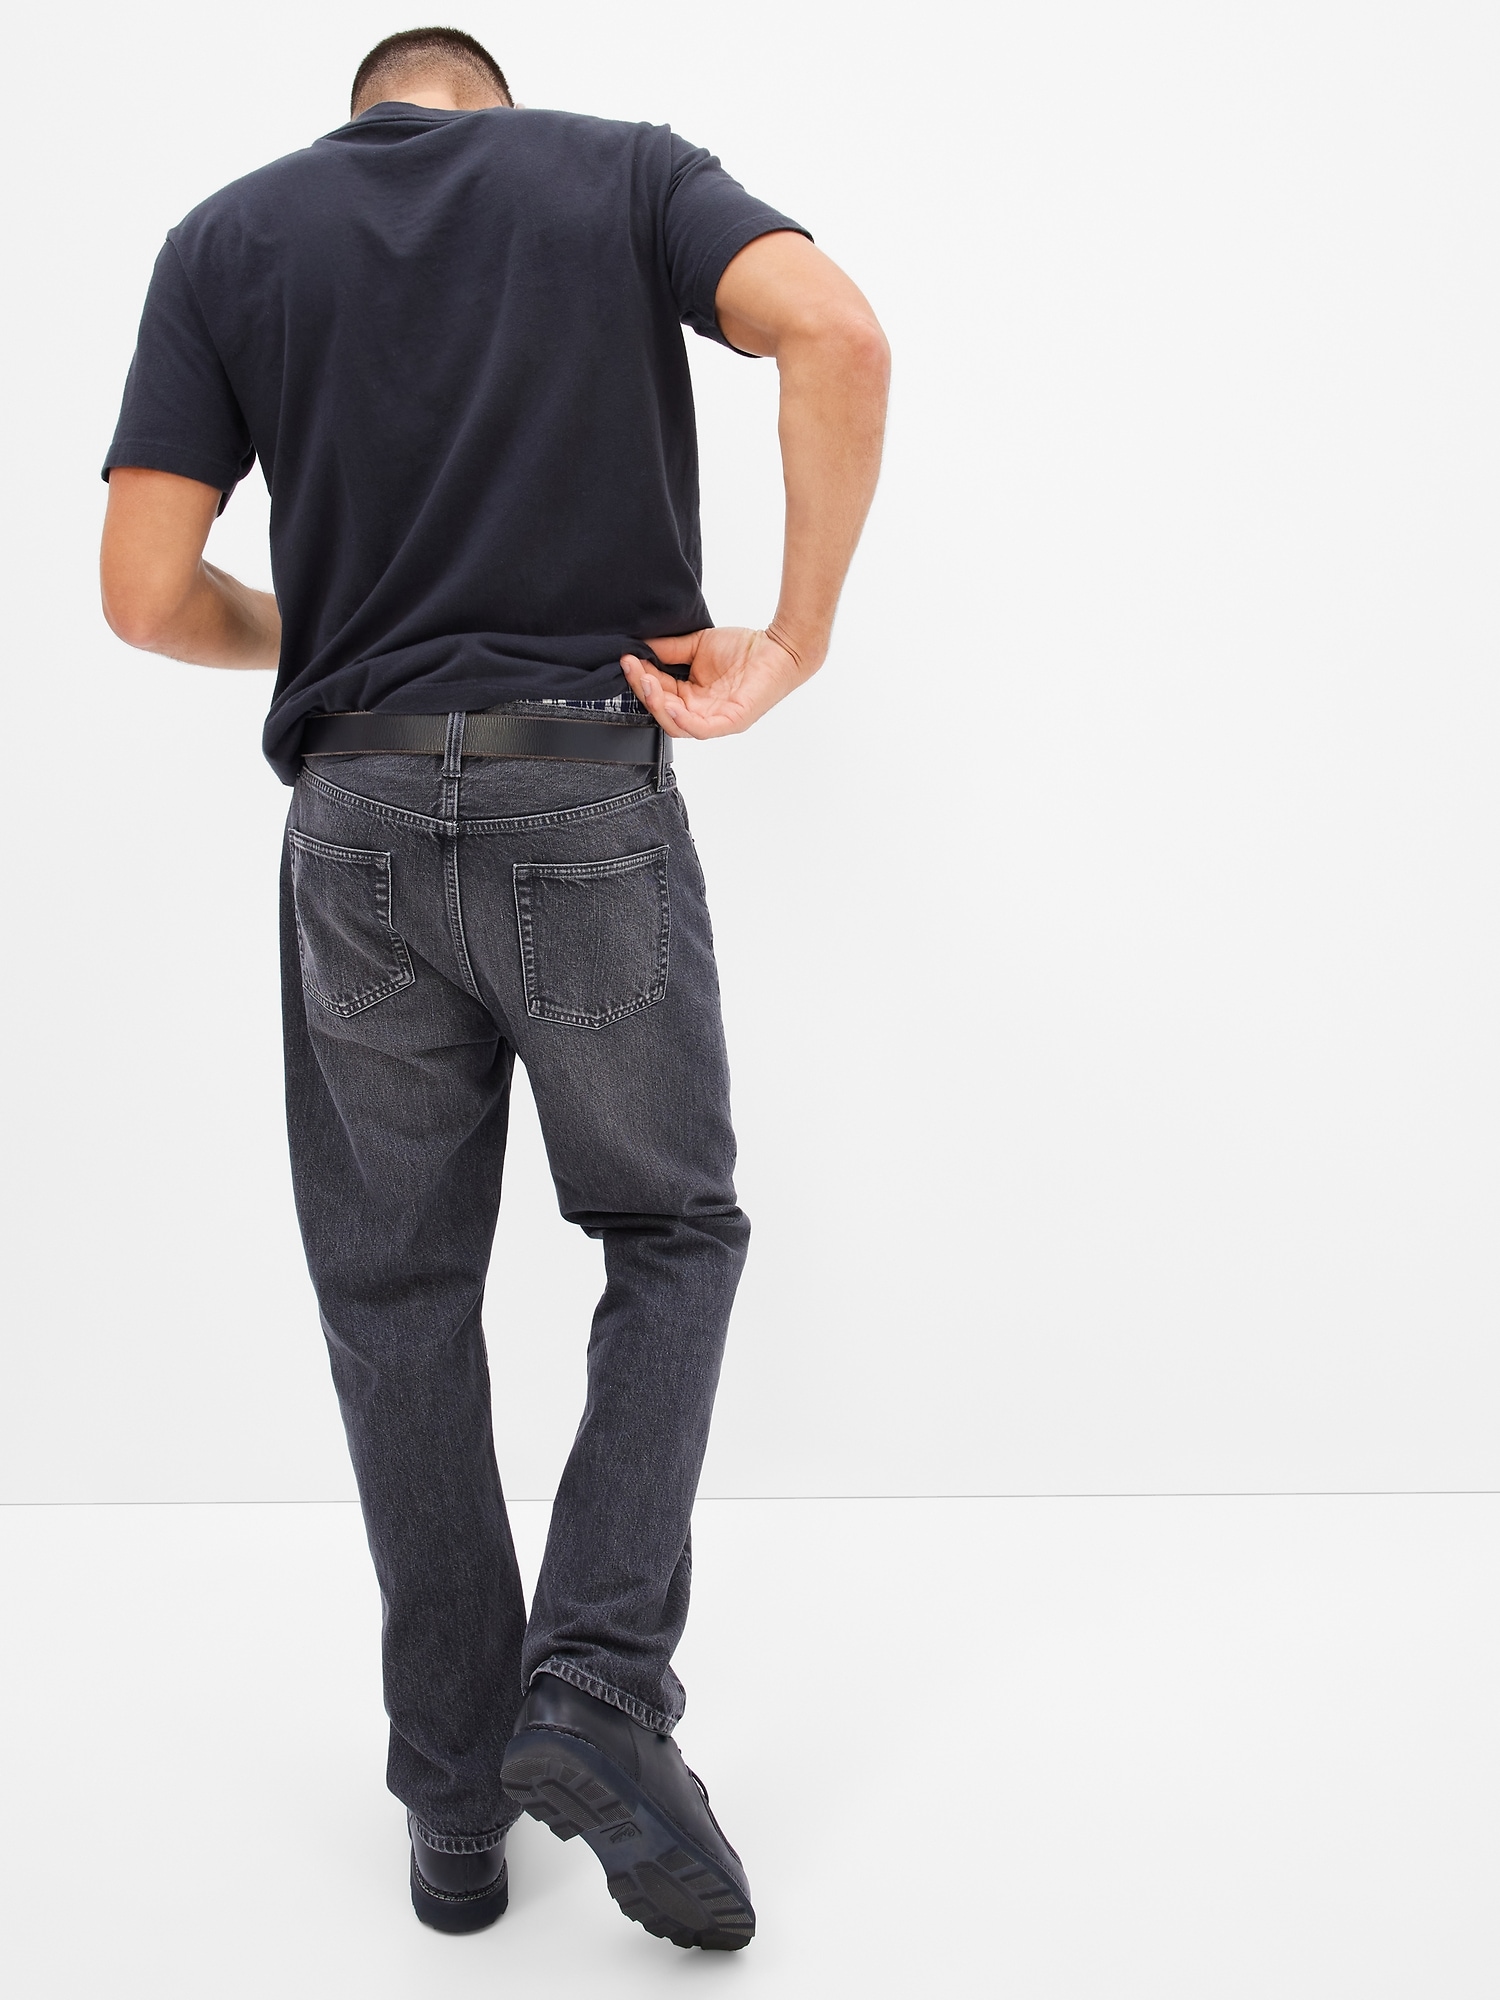 Men's Leather Belt by Gap True Black Size 28W